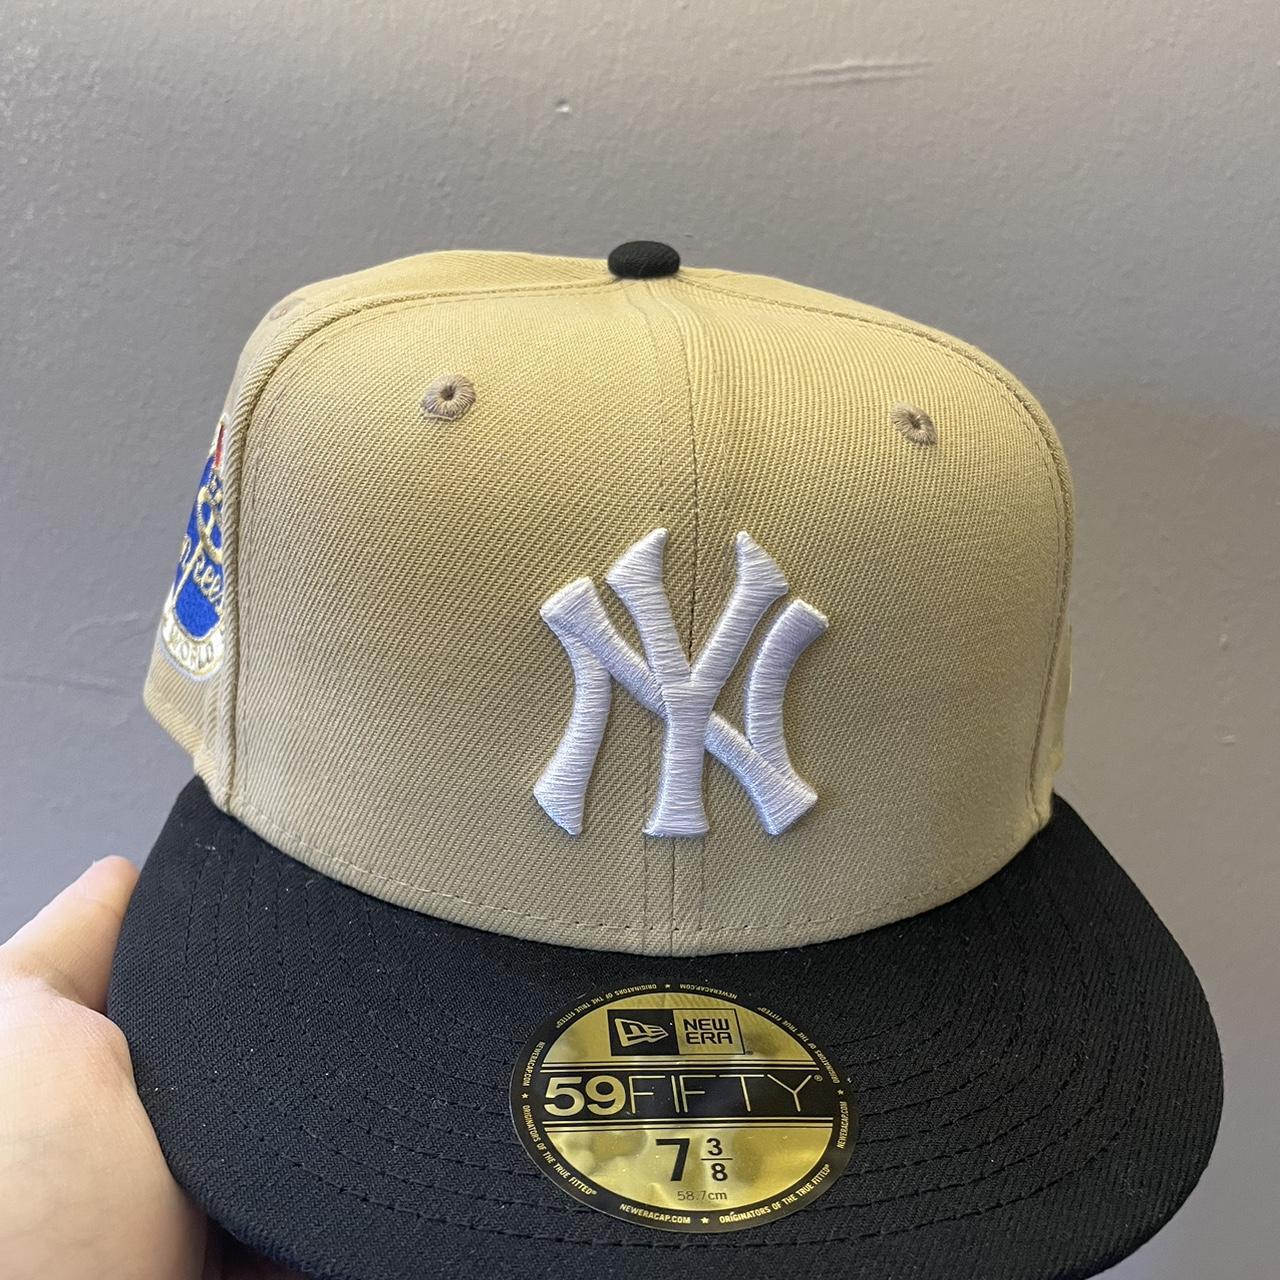 Bk caps New York Yankees ty Mathis inspo size 7 3/8... - Depop